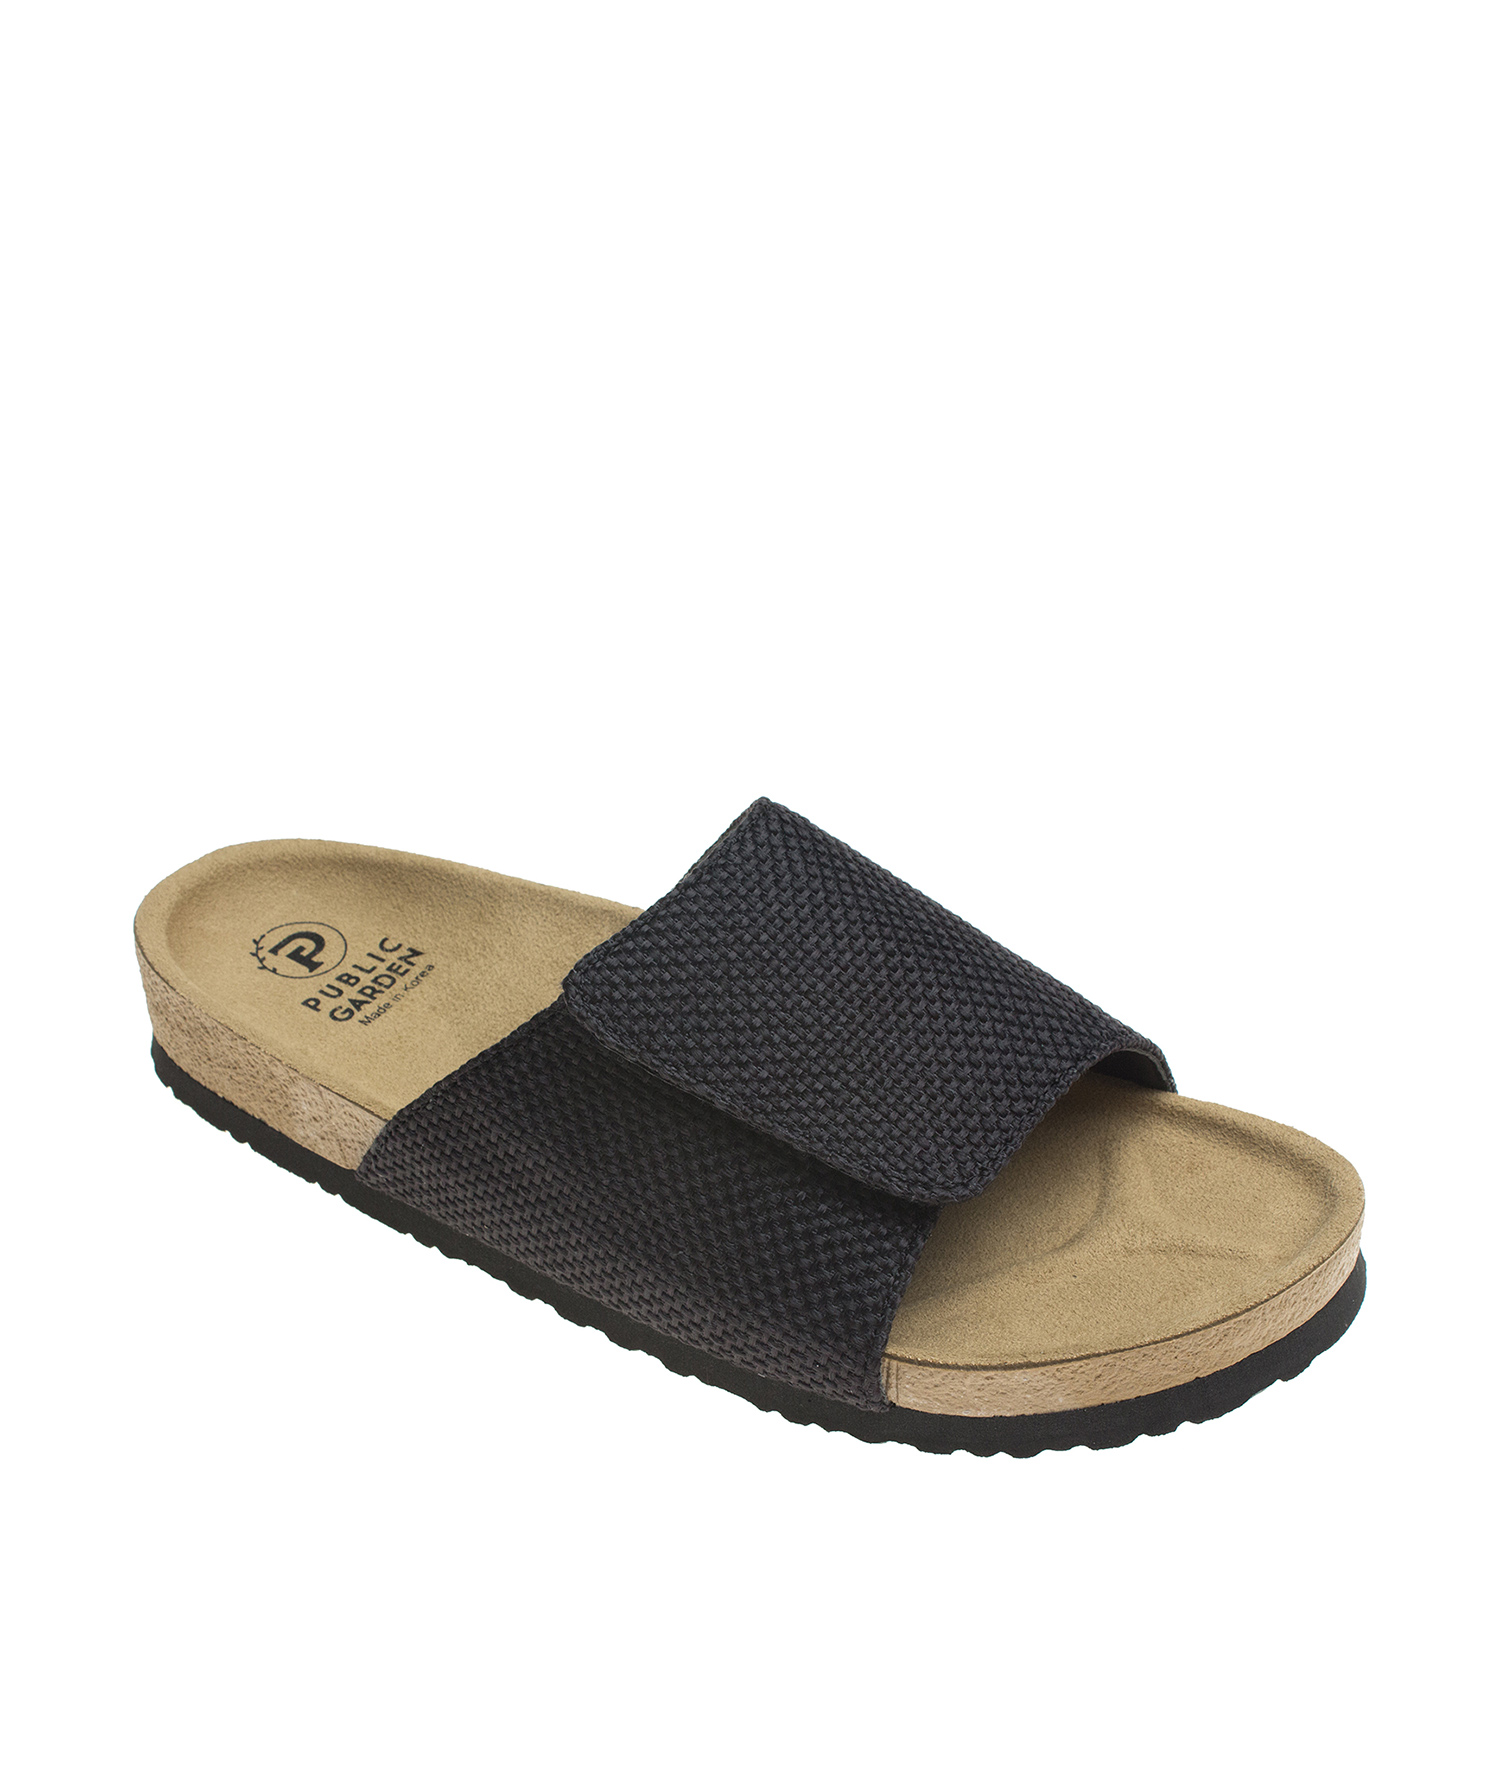 https://annakastleshoes.com/wp-content/uploads/2018/07/SSBPublicAli-AnnaKastle-Womens-Hemp-Single-Strap-Slide-Sandals-Black-01.jpg